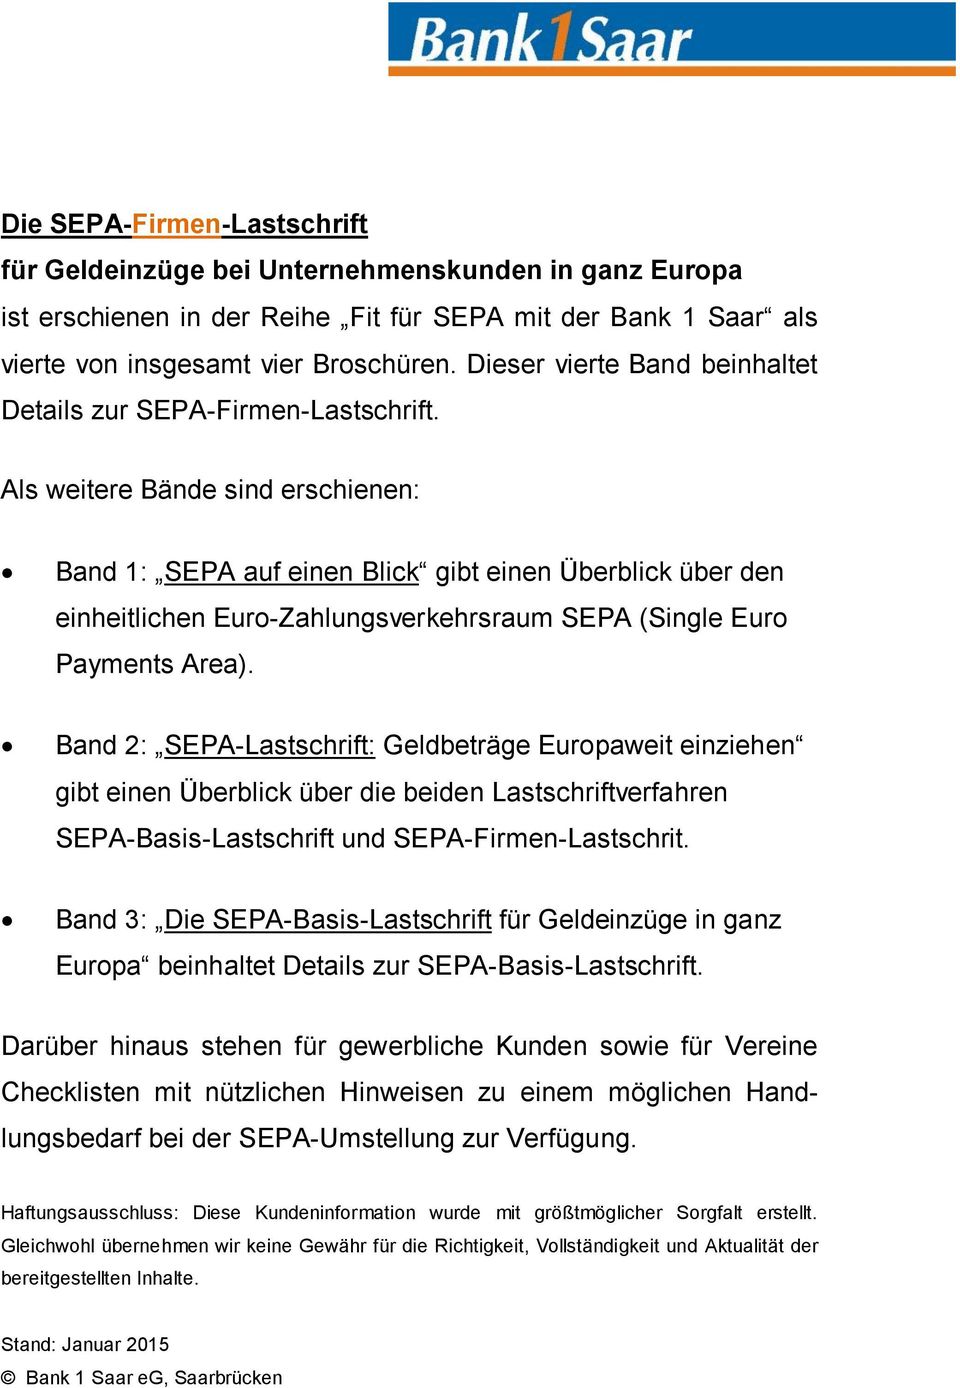 Als weitere Bände sind erschienen: Band 1: SEPA auf einen Blick gibt einen Überblick über den einheitlichen Euro-Zahlungsverkehrsraum SEPA (Single Euro Payments Area).